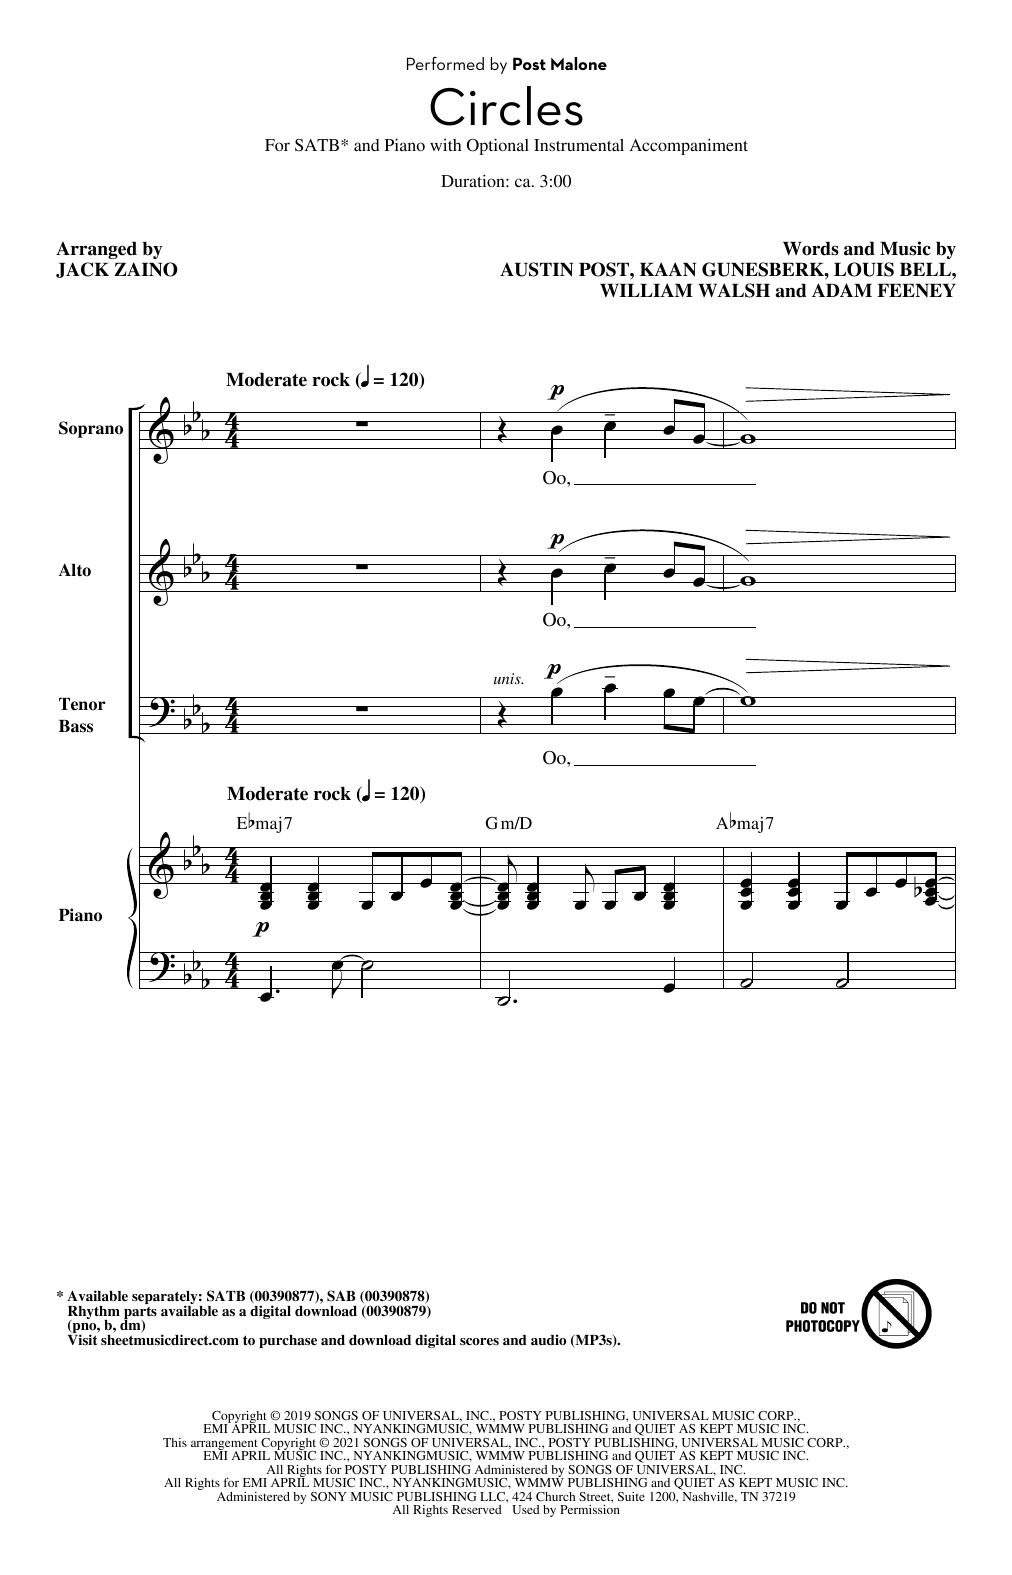 Circles (arr. Jack Zaino) (SATB Choir) von Post Malone